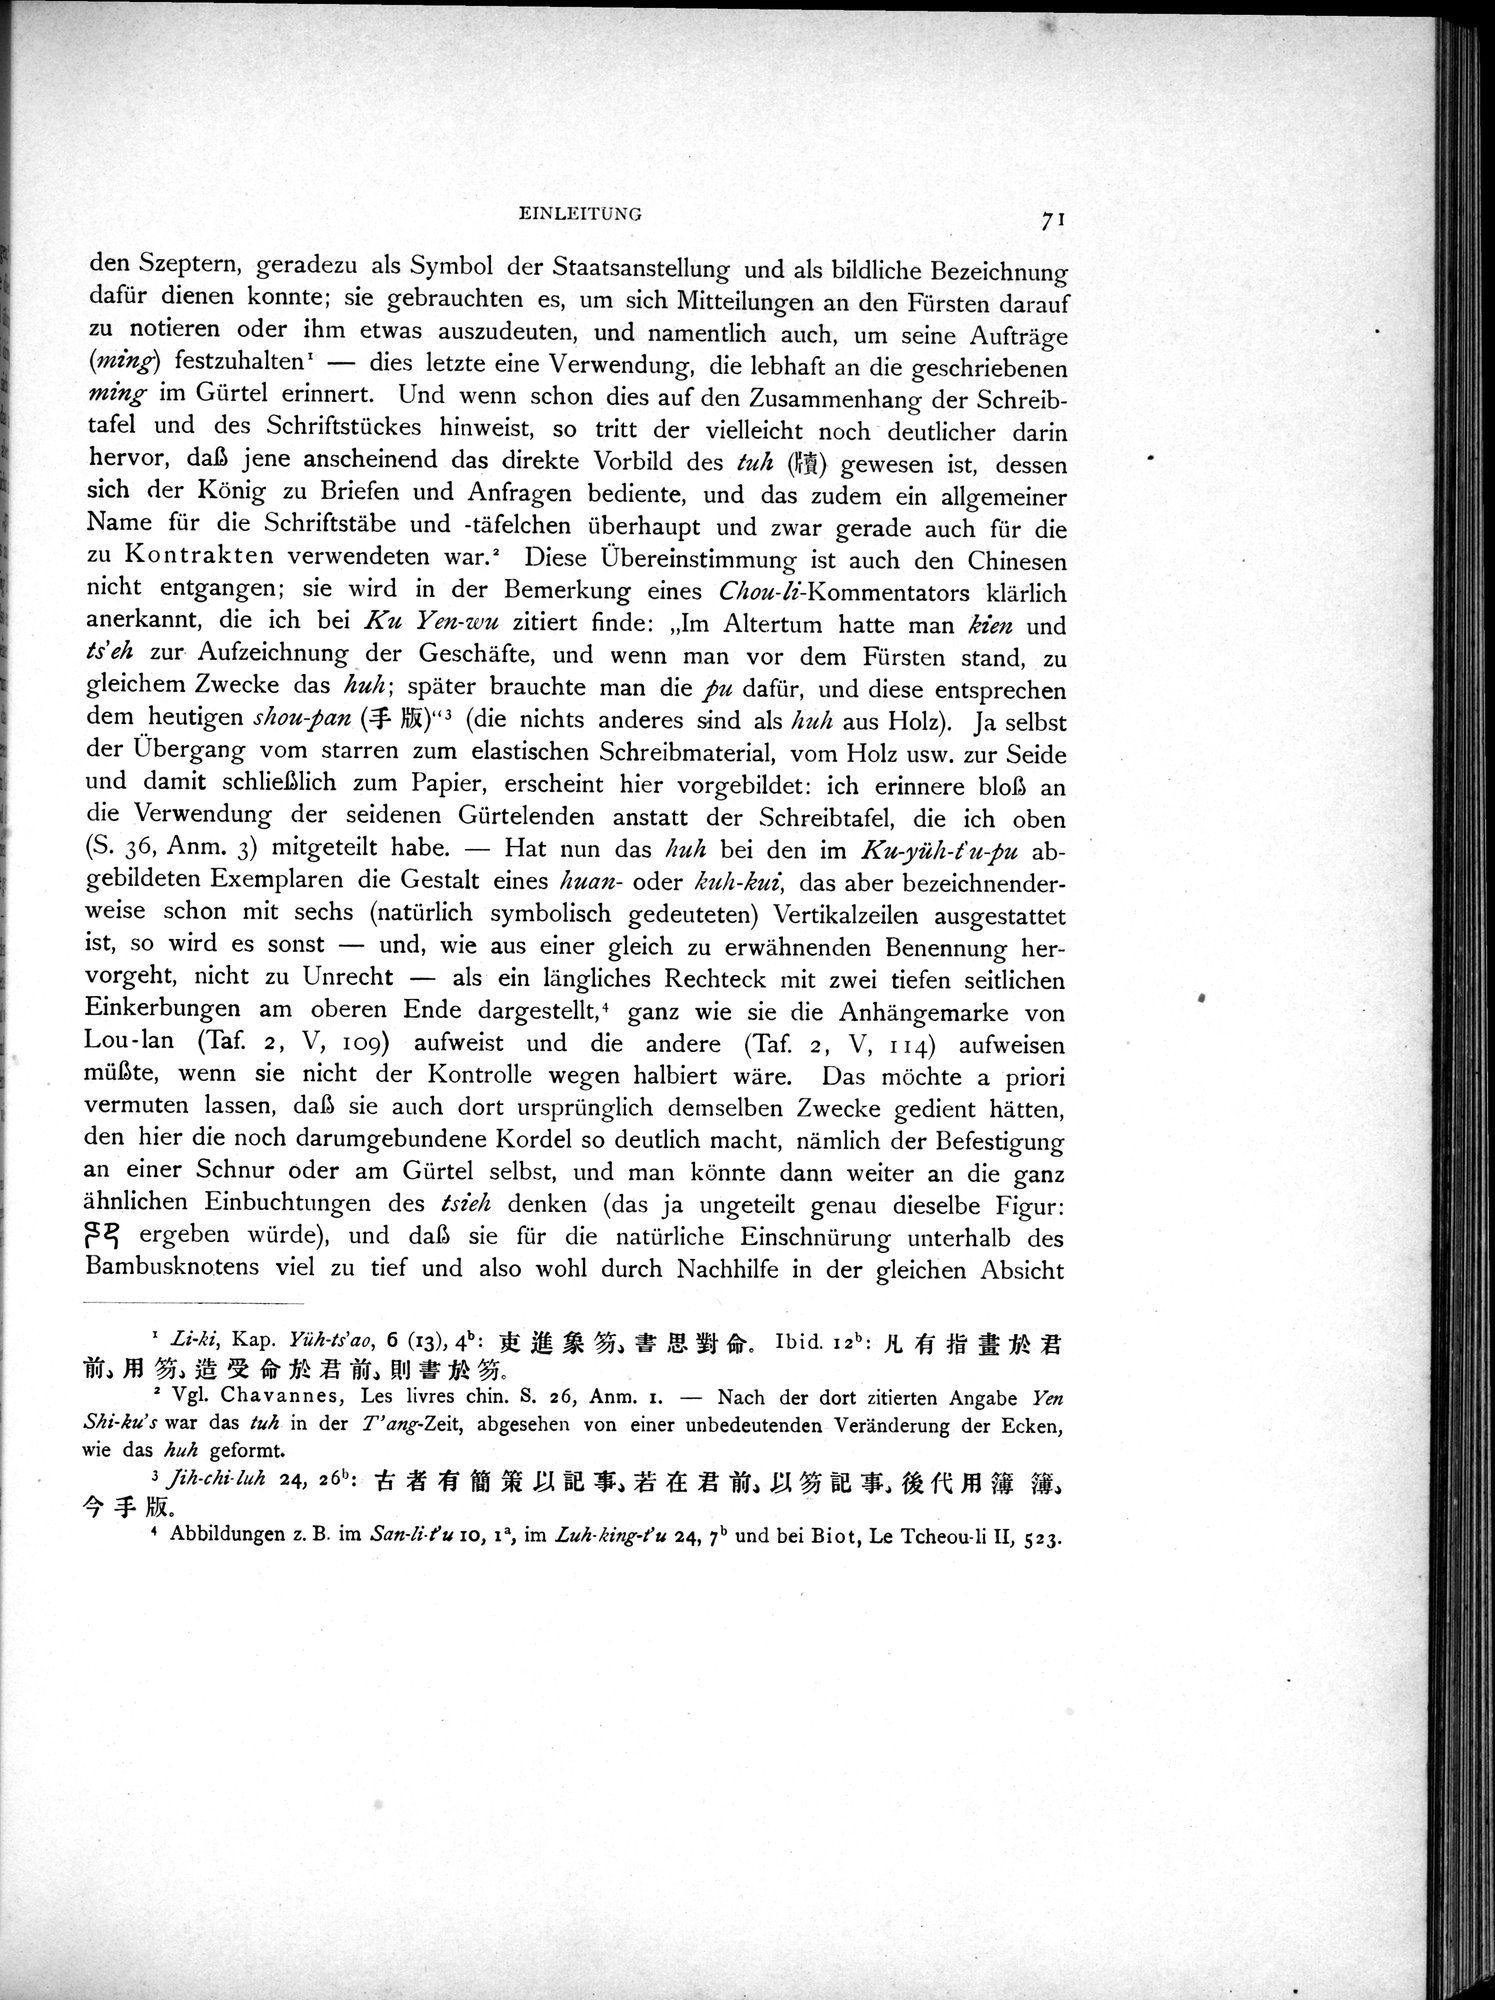 Die Chinesischen Handschriften- und sonstigen Kleinfunde Sven Hedins in Lou-lan : vol.1 / Page 95 (Grayscale High Resolution Image)